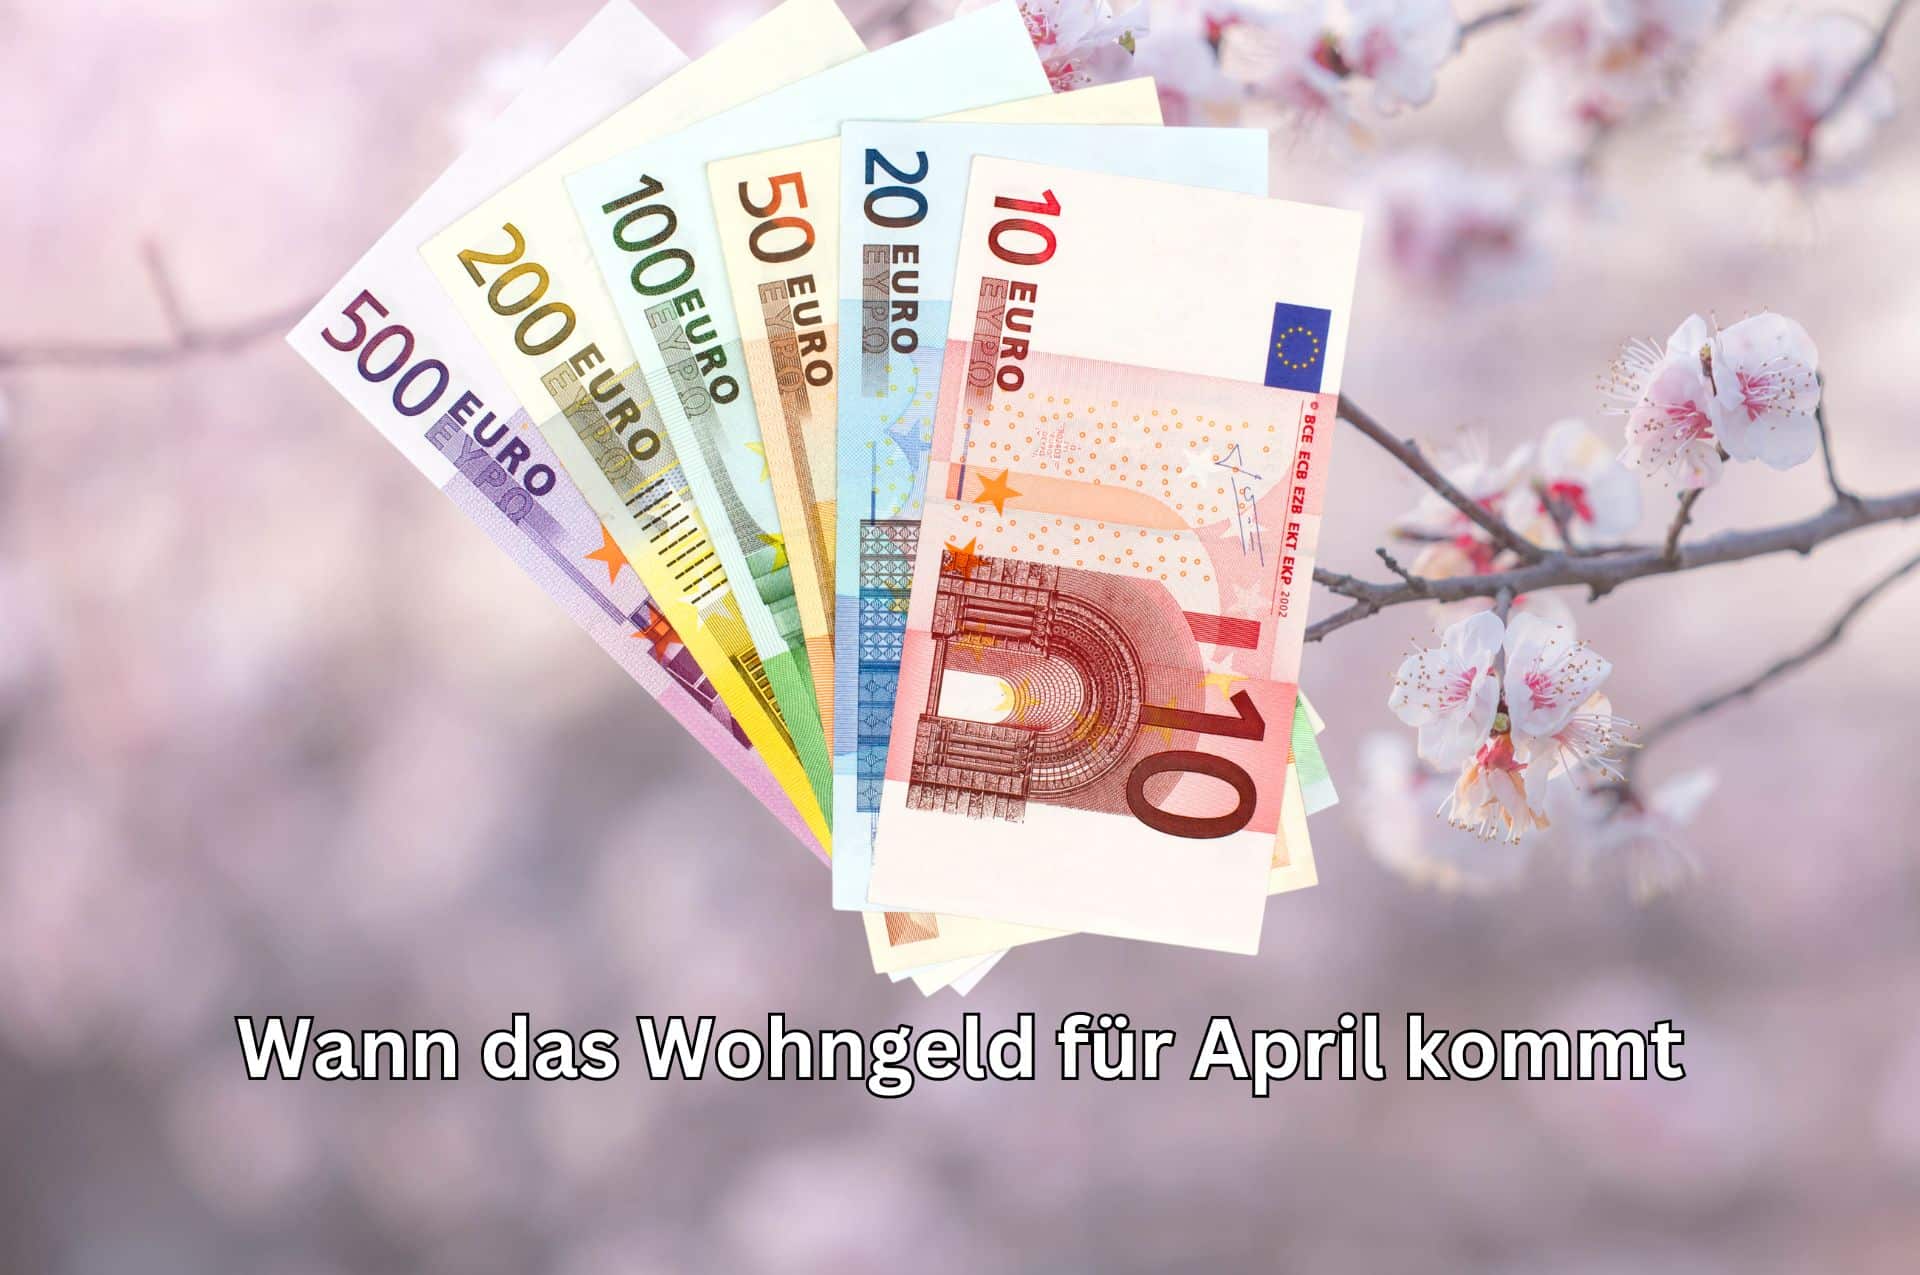 Das Wohngeld für April wird voraussichtlich schon vor Ostern überwiesen!